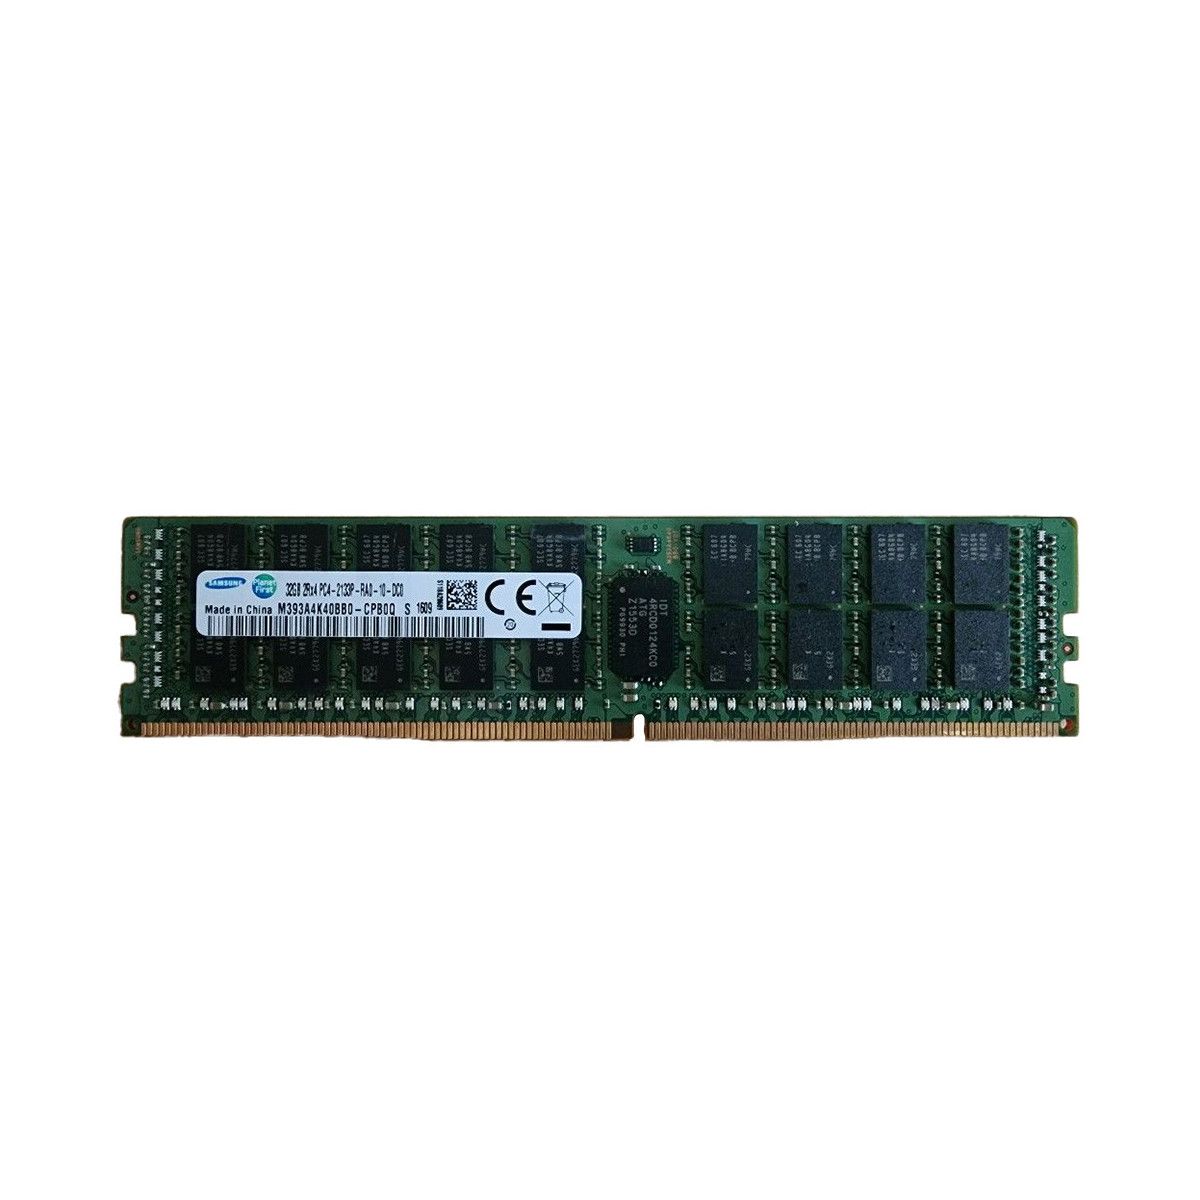 752370-091-MS - Memstar 1x 32GB DDR4-2133 RDIMM PC4-17000P-R - Memorie OEM compatibilă Mem-Star 1 - Memstar 